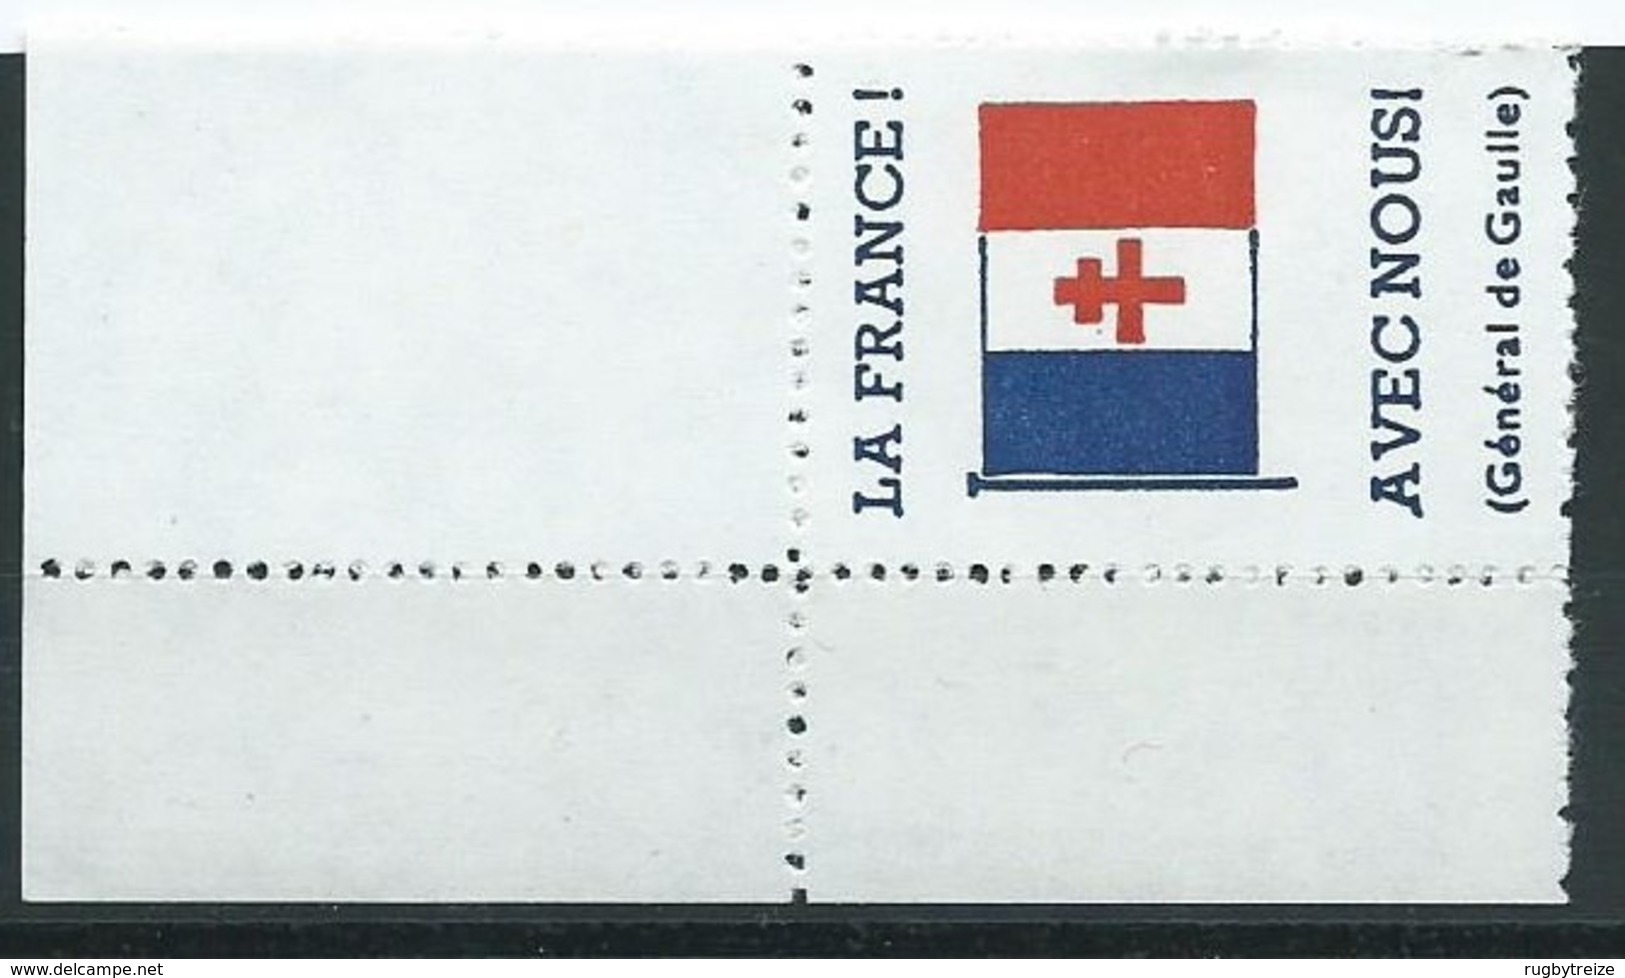 3175 - Coin La France Avec Nous Général De Gaulle Vignette Errinophilie Libération WW2 - Libération